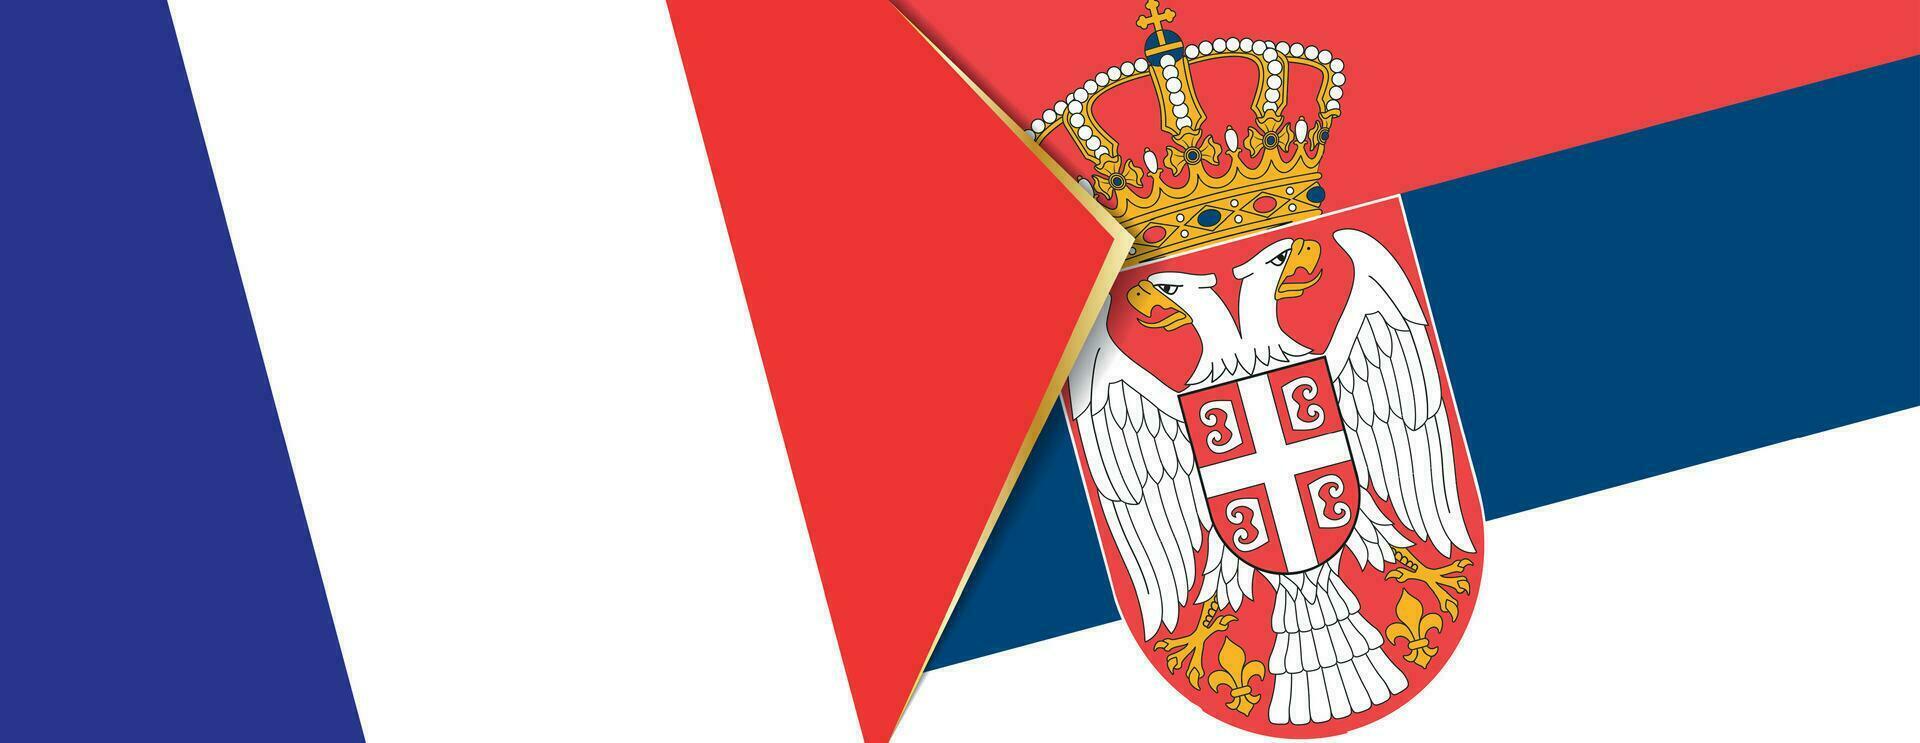 Frankreich und Serbien Flaggen, zwei Vektor Flaggen.